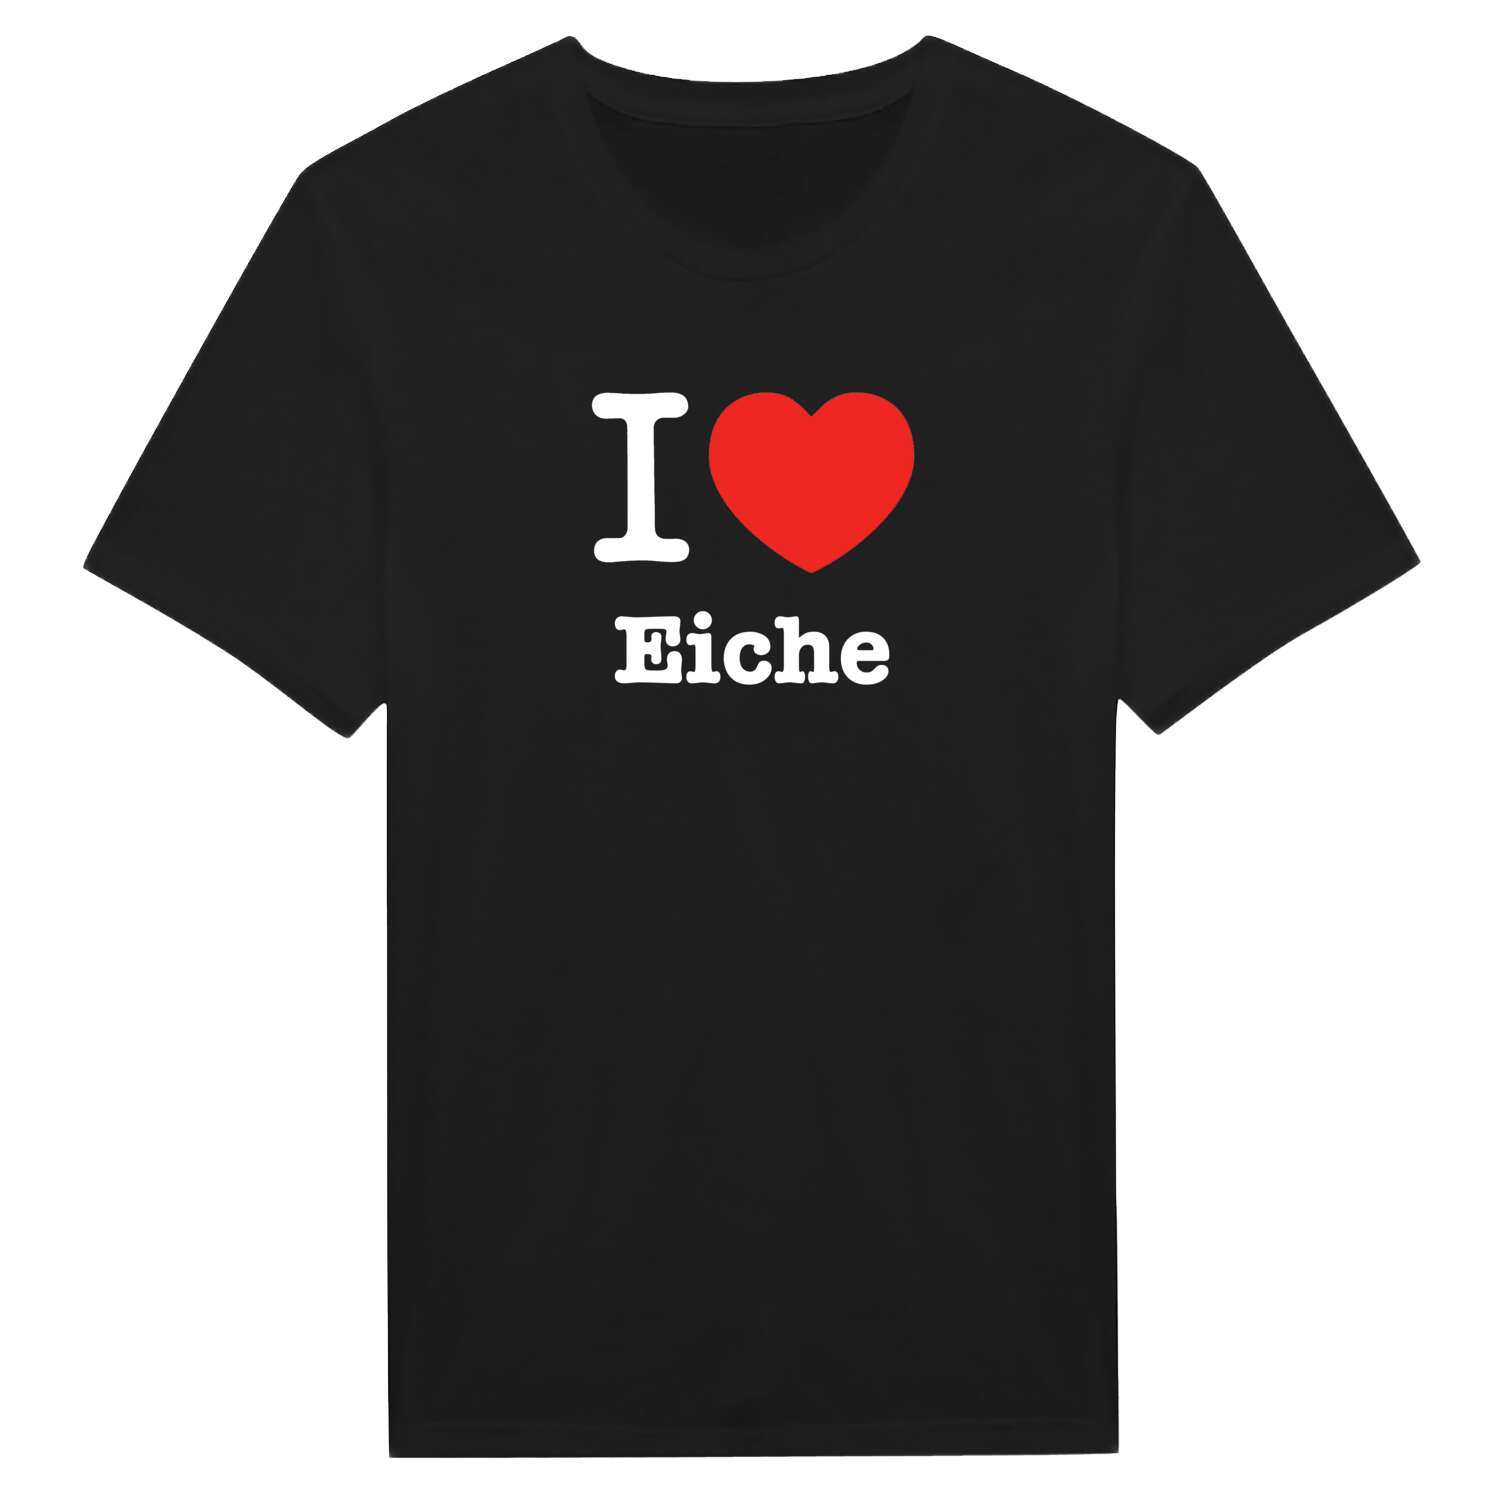 Eiche T-Shirt »I love«